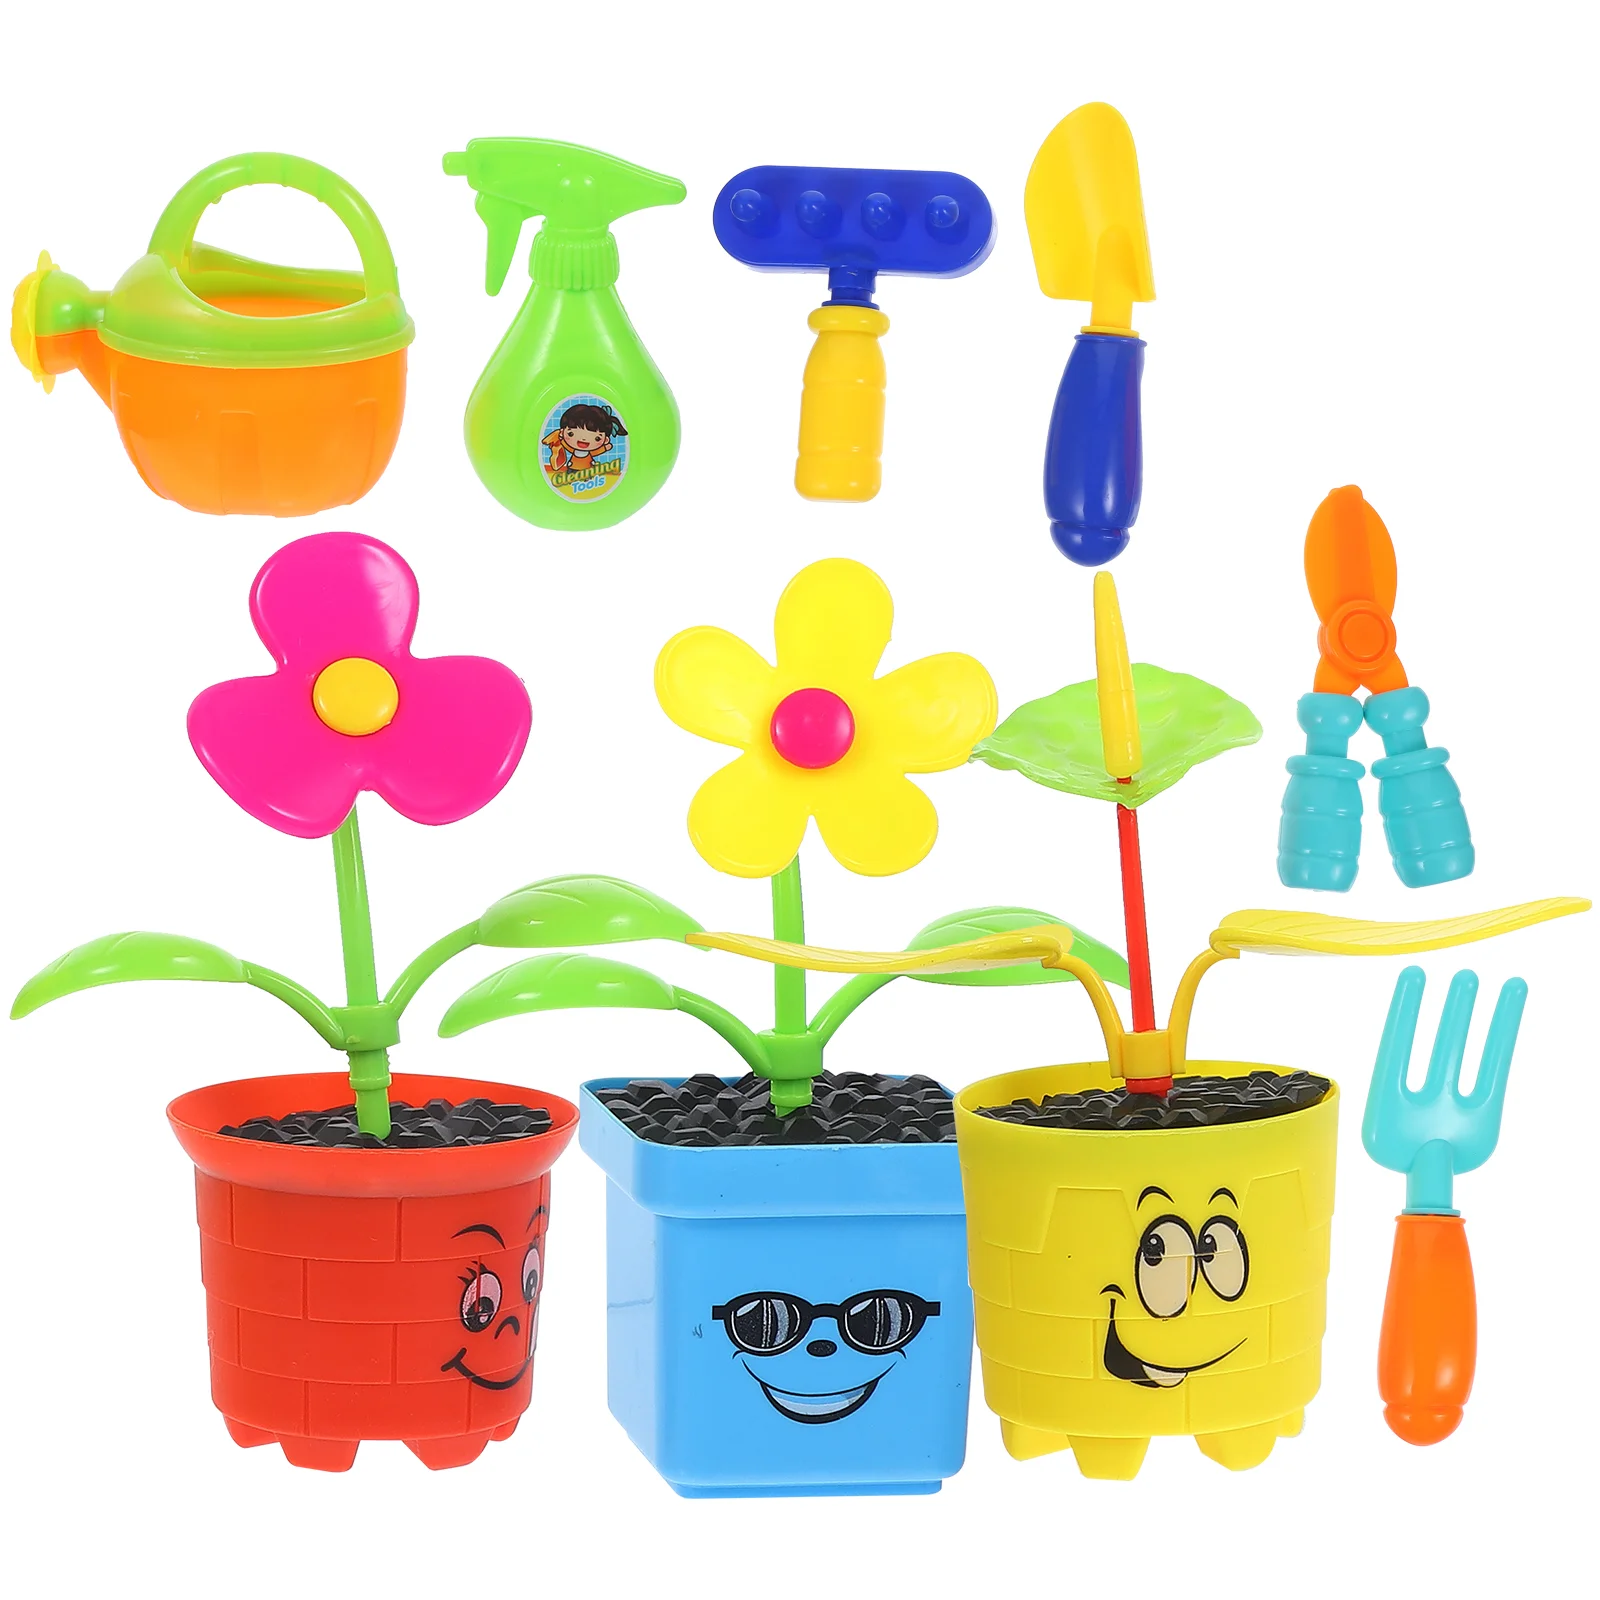 

Инструменты, детская игрушка для цветов, поливки, игрушки для малышей, игровой домик для детей и родителей, креативный садовый набор для посадки детей